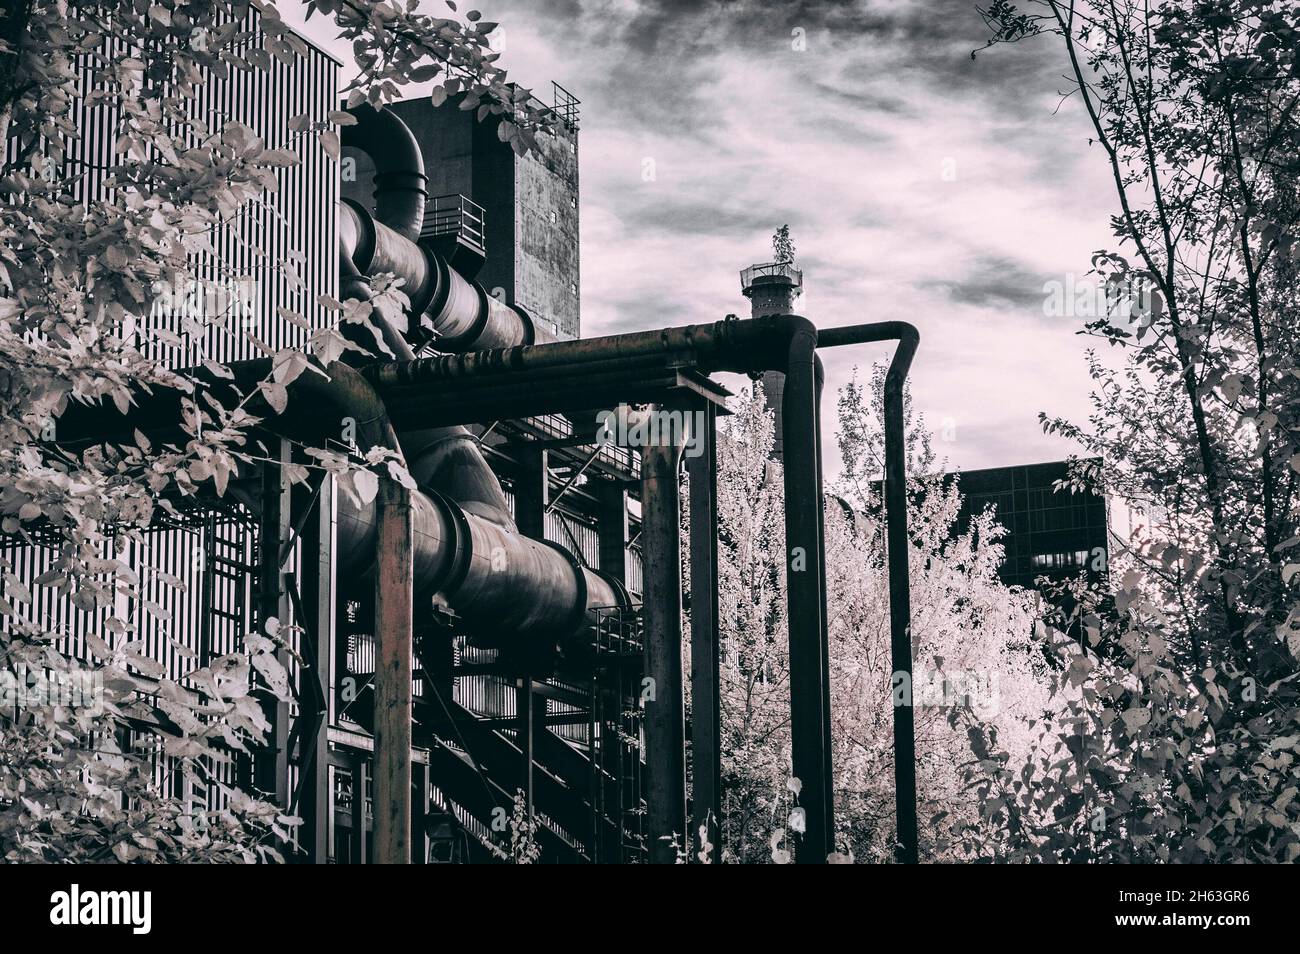 vecchie strutture presso il sito patrimonio mondiale dell'unesco 'zeche zollverein' - un monumento industriale di una ex miniera di cole a essen, renania settentrionale-vestfalia, germania. sparare con termocamera modificata, ir720 nm. Foto Stock